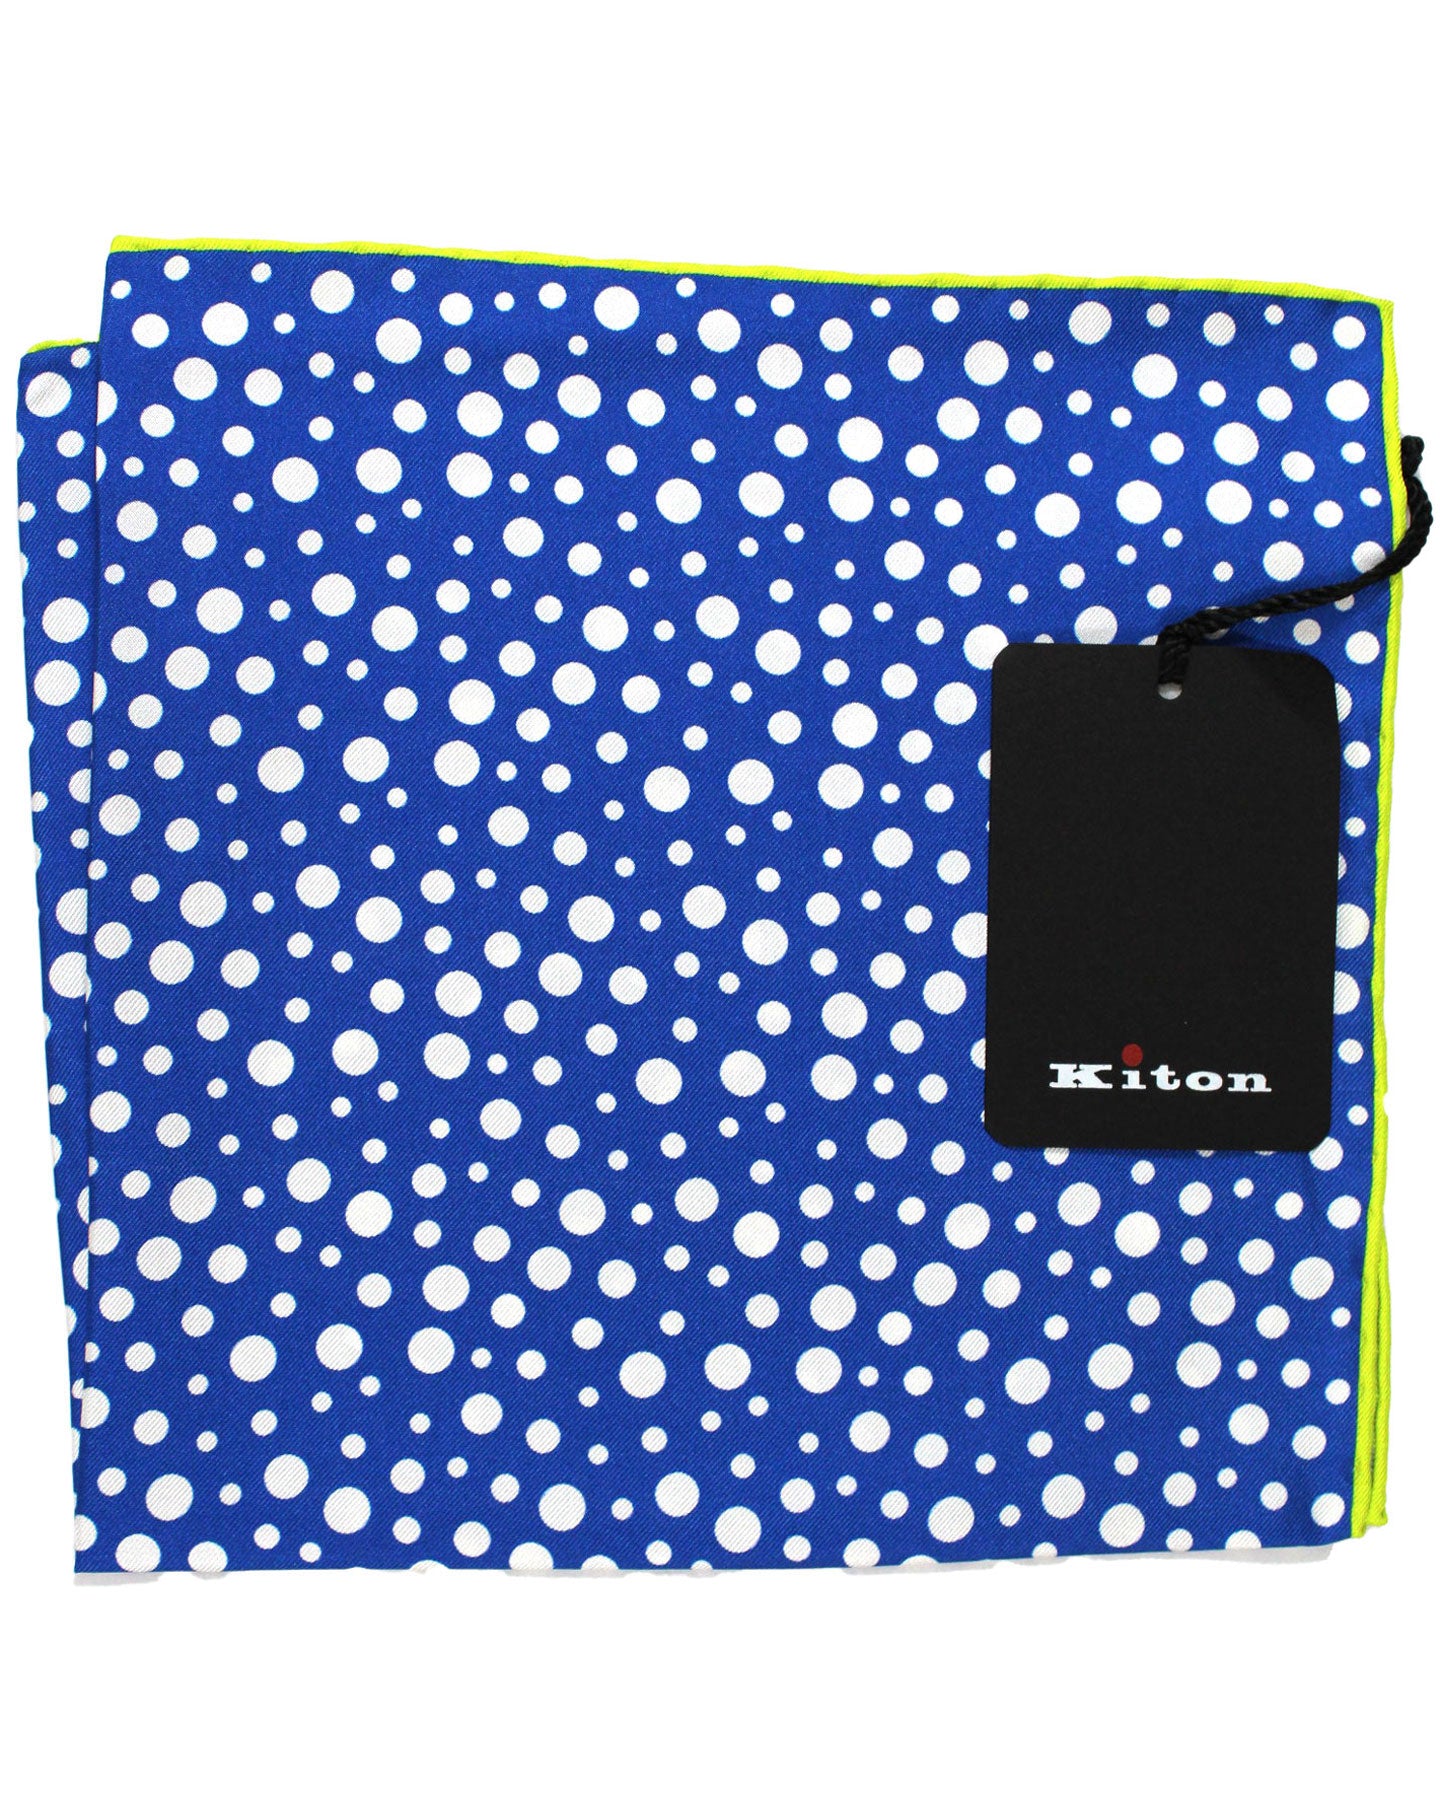 Kiton Silk Pocket Square Royal Blue Lime Dots